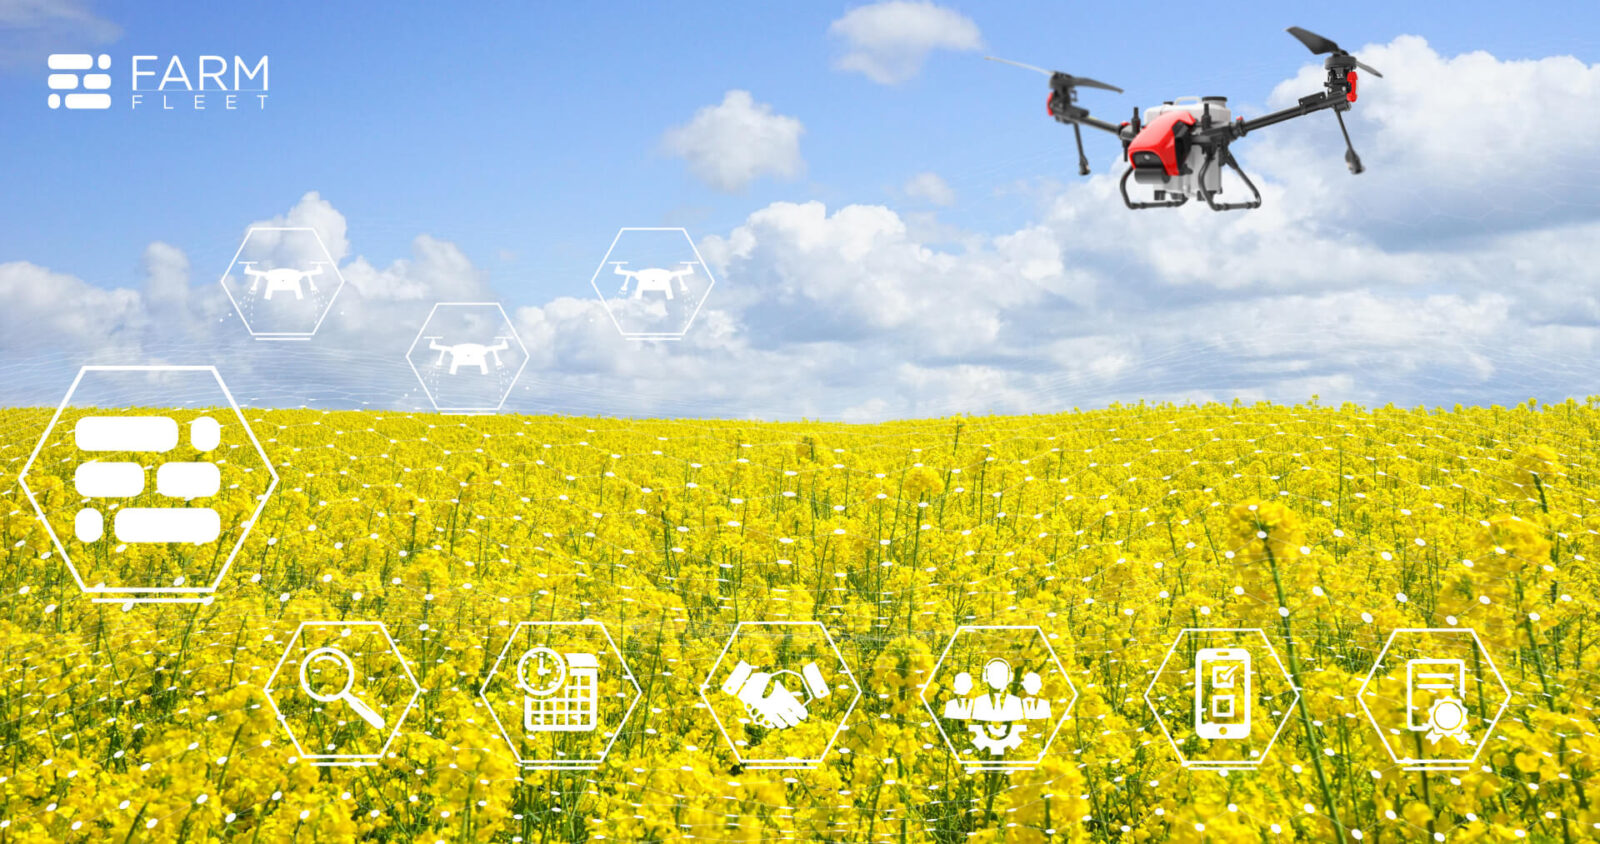 Наш перший AgTech продукт – платформа FarmFleet, яка кардинально змінить ринок сервісного бізнесу з надання послуг дронами